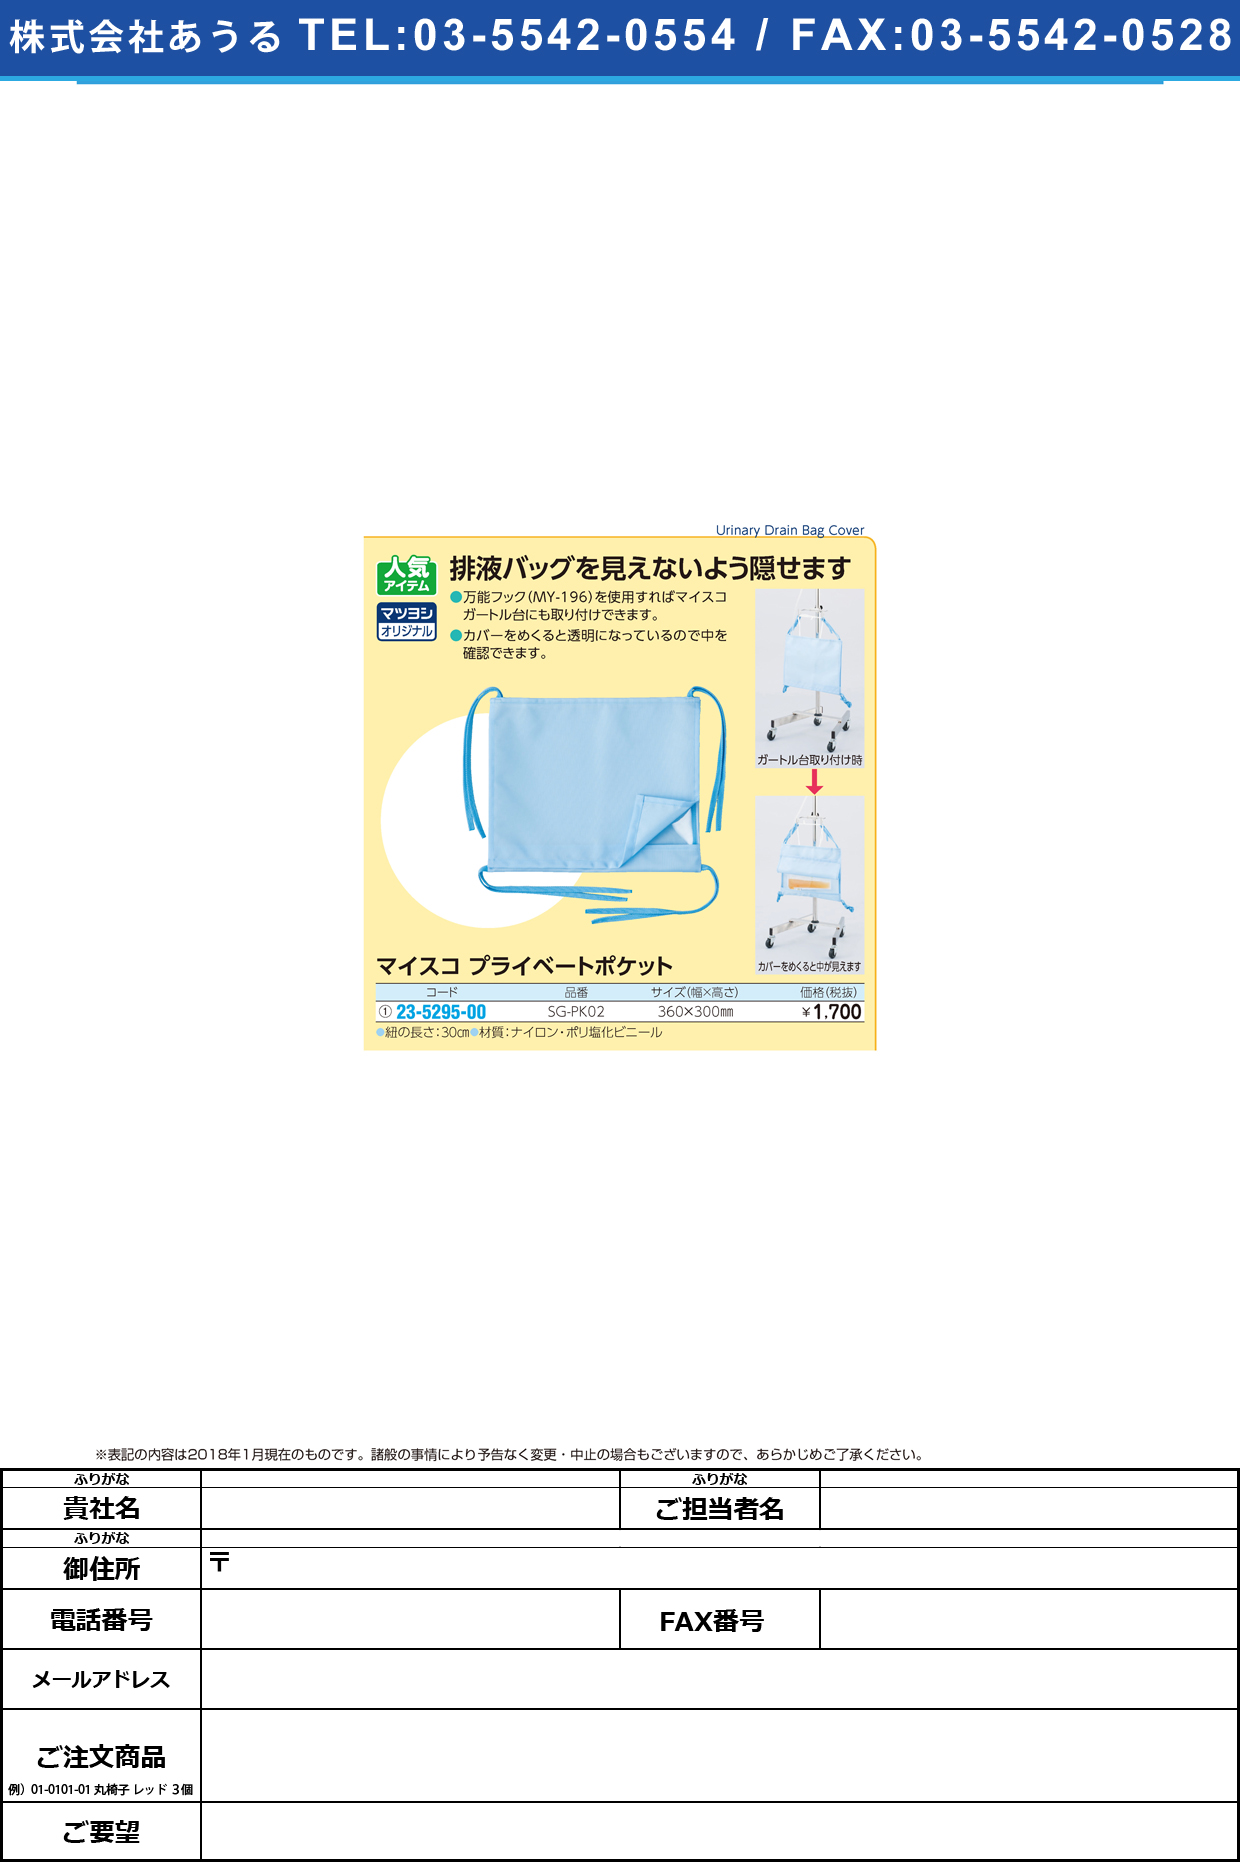 (23-5295-00)マイスコプライベートポケット SG-PK02 ﾏｲｽｺﾌﾟﾗｲﾍﾞｰﾄﾎﾟｹｯﾄ【1枚単位】【2018年カタログ商品】